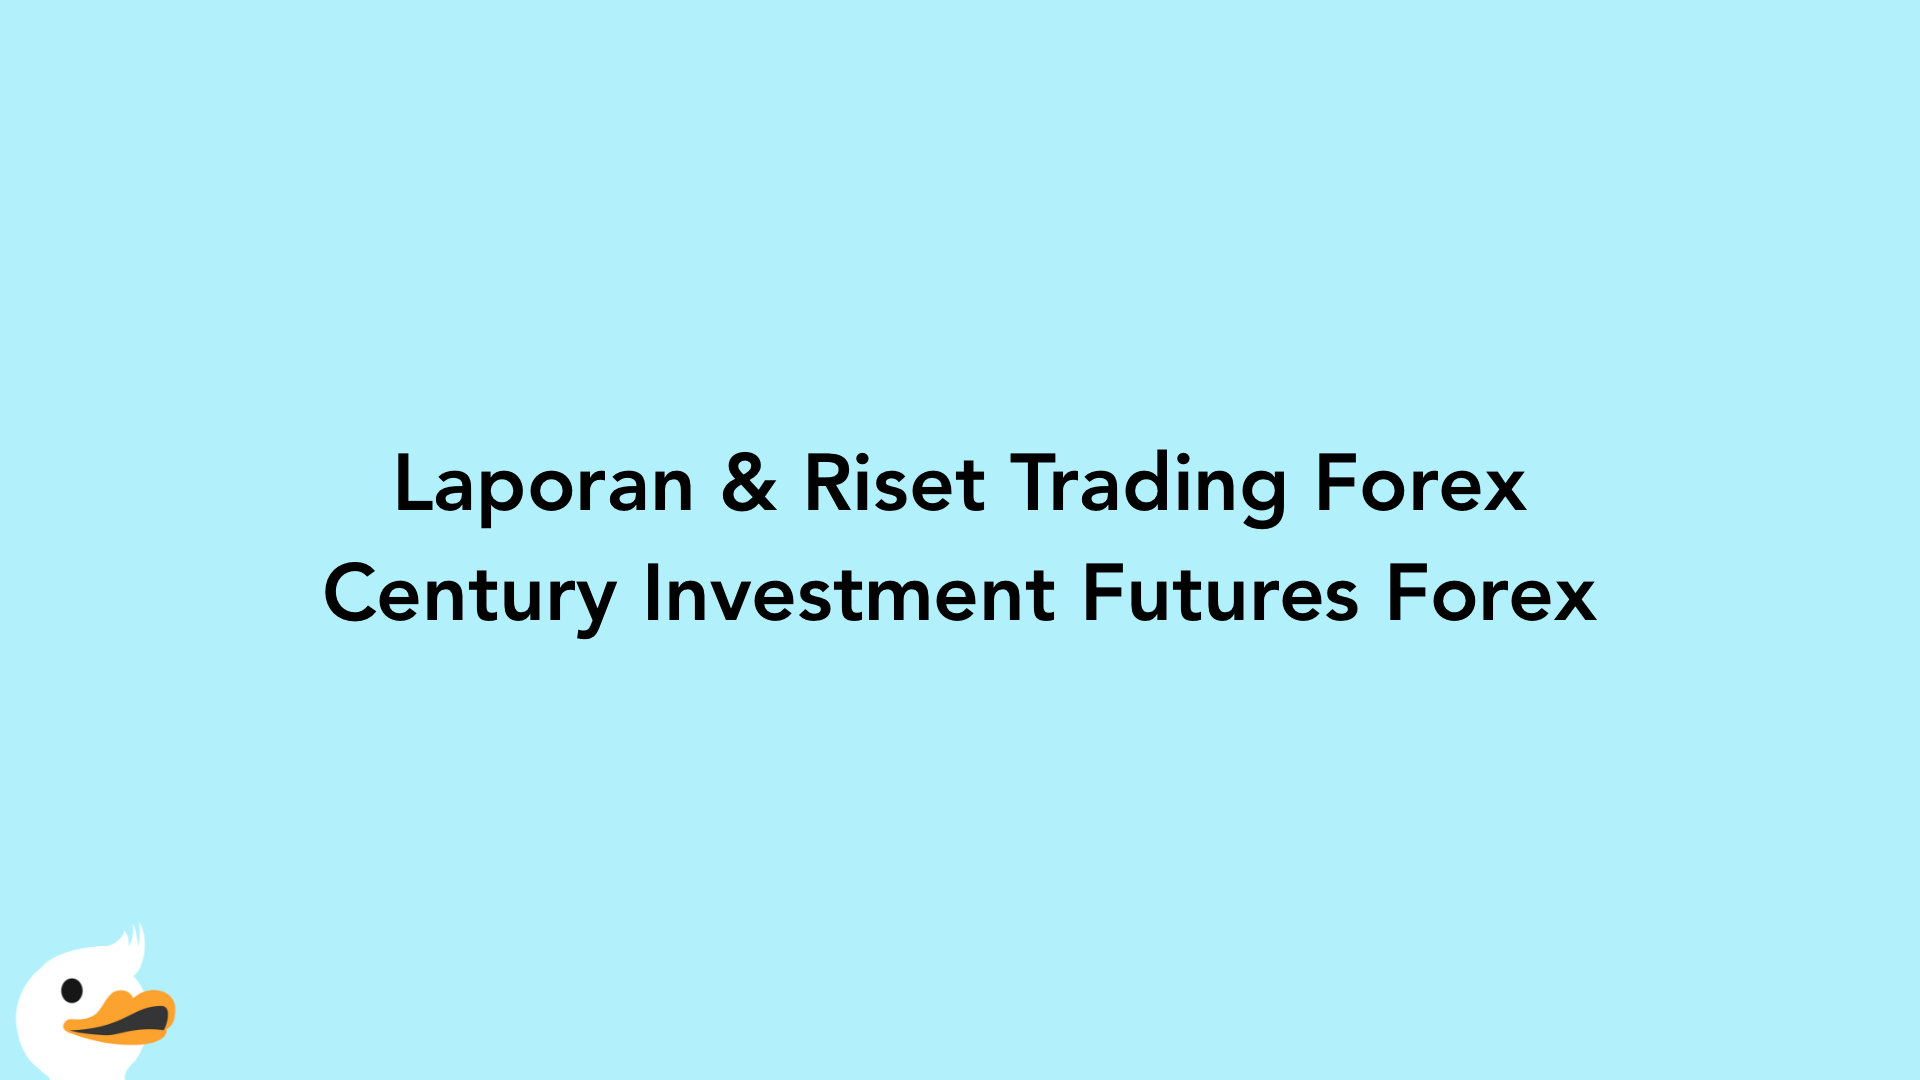 Laporan & Riset Trading Forex Century Investment Futures Forex